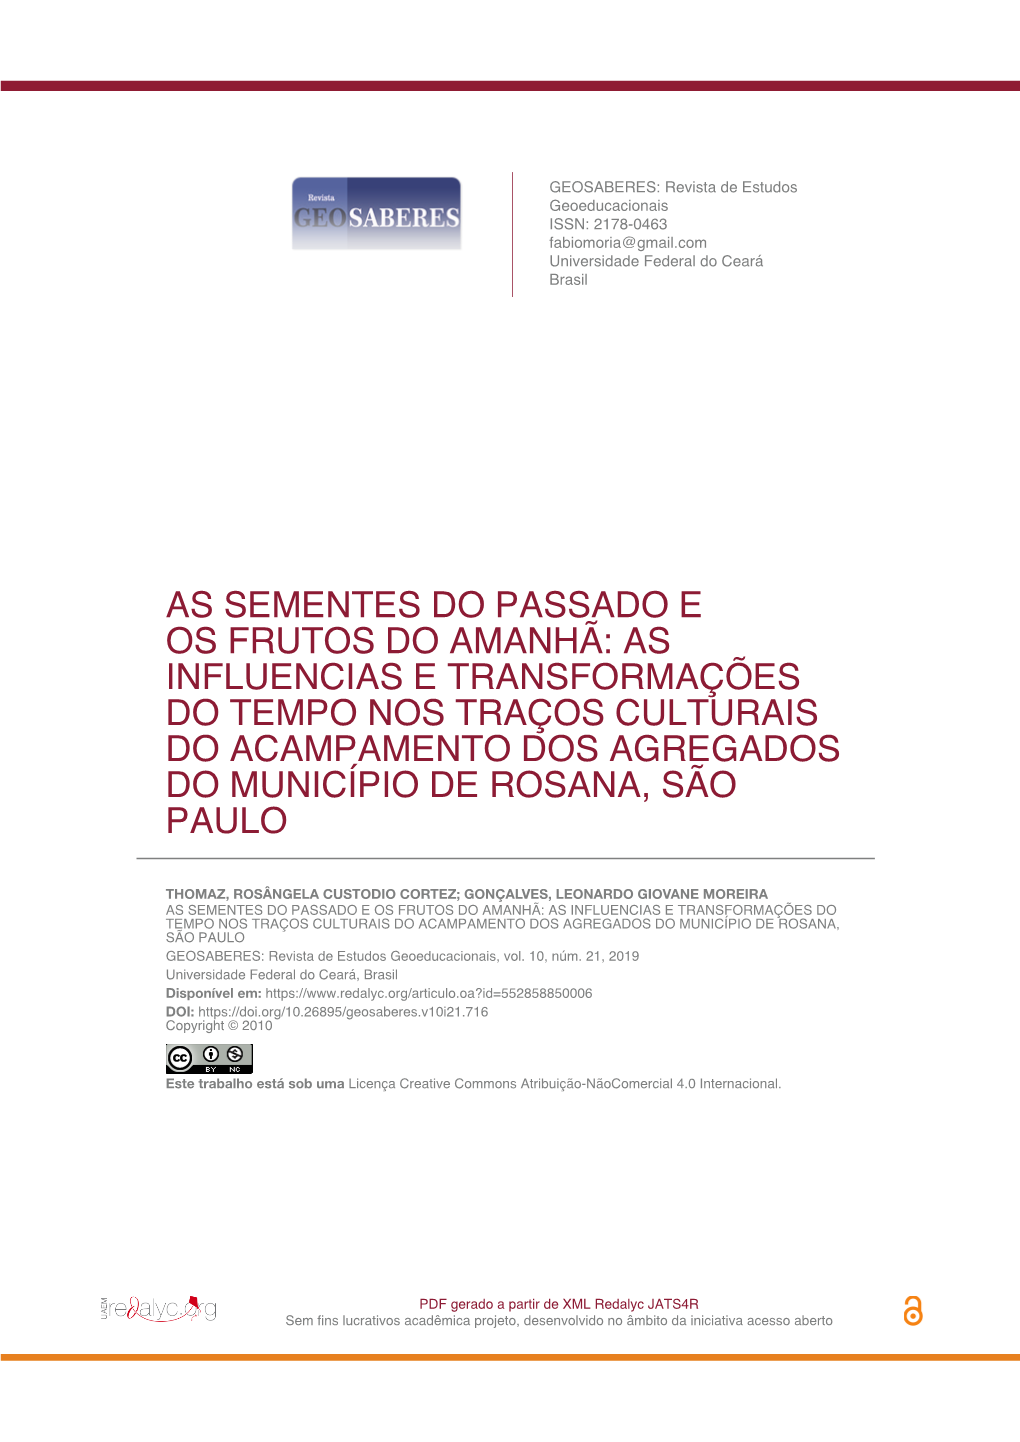 As Influencias E Transformações Do Tempo Nos Traços Culturais Do Acampamento Dos Agregados Do Município De Rosana, São Paulo